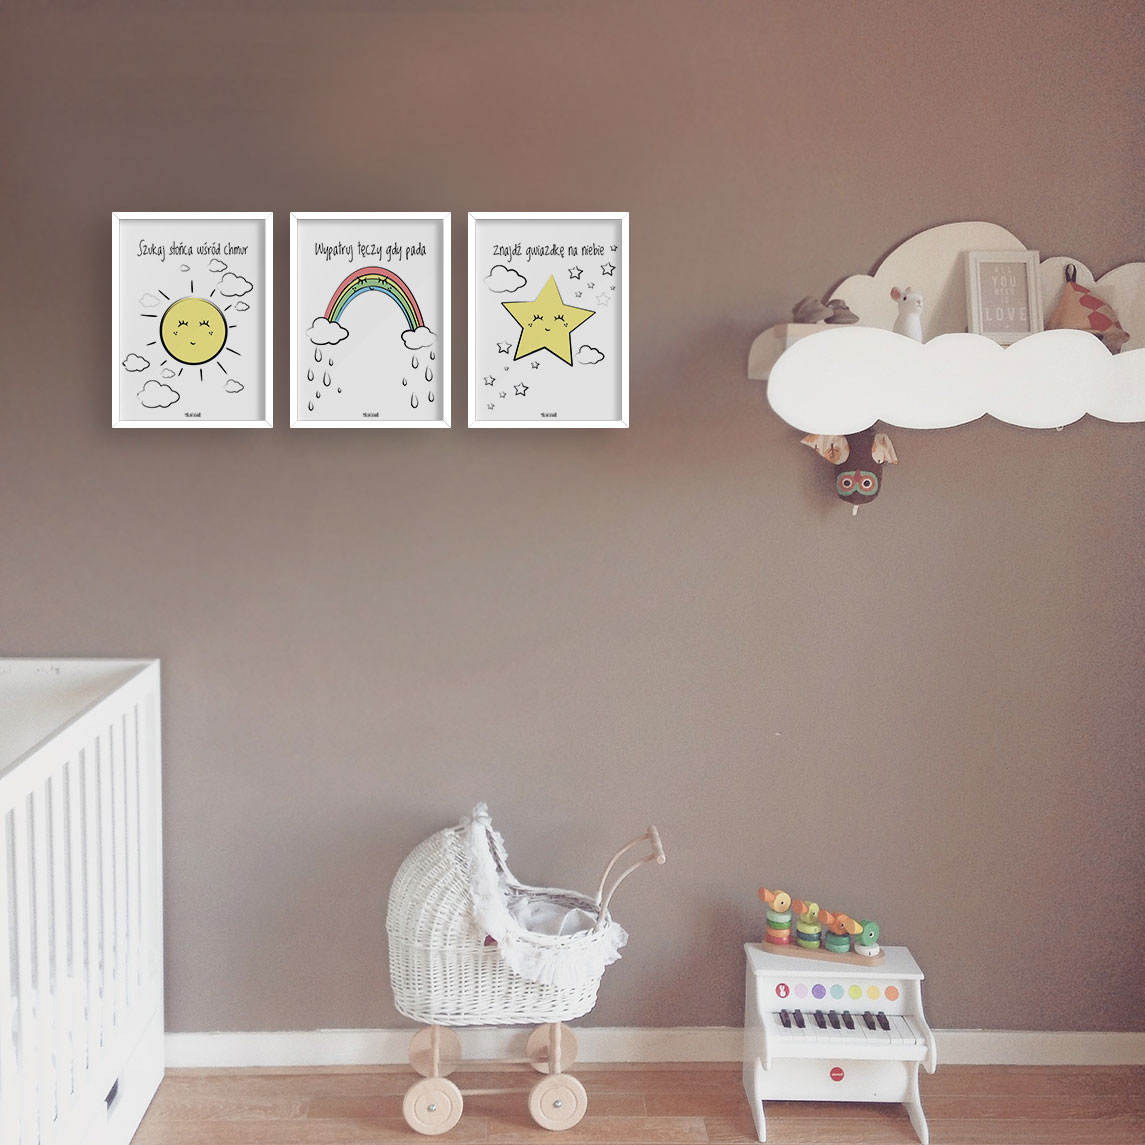 plakaty dla dzieci dekoracje pokój chłopca dziewczynki szukaj słońca e